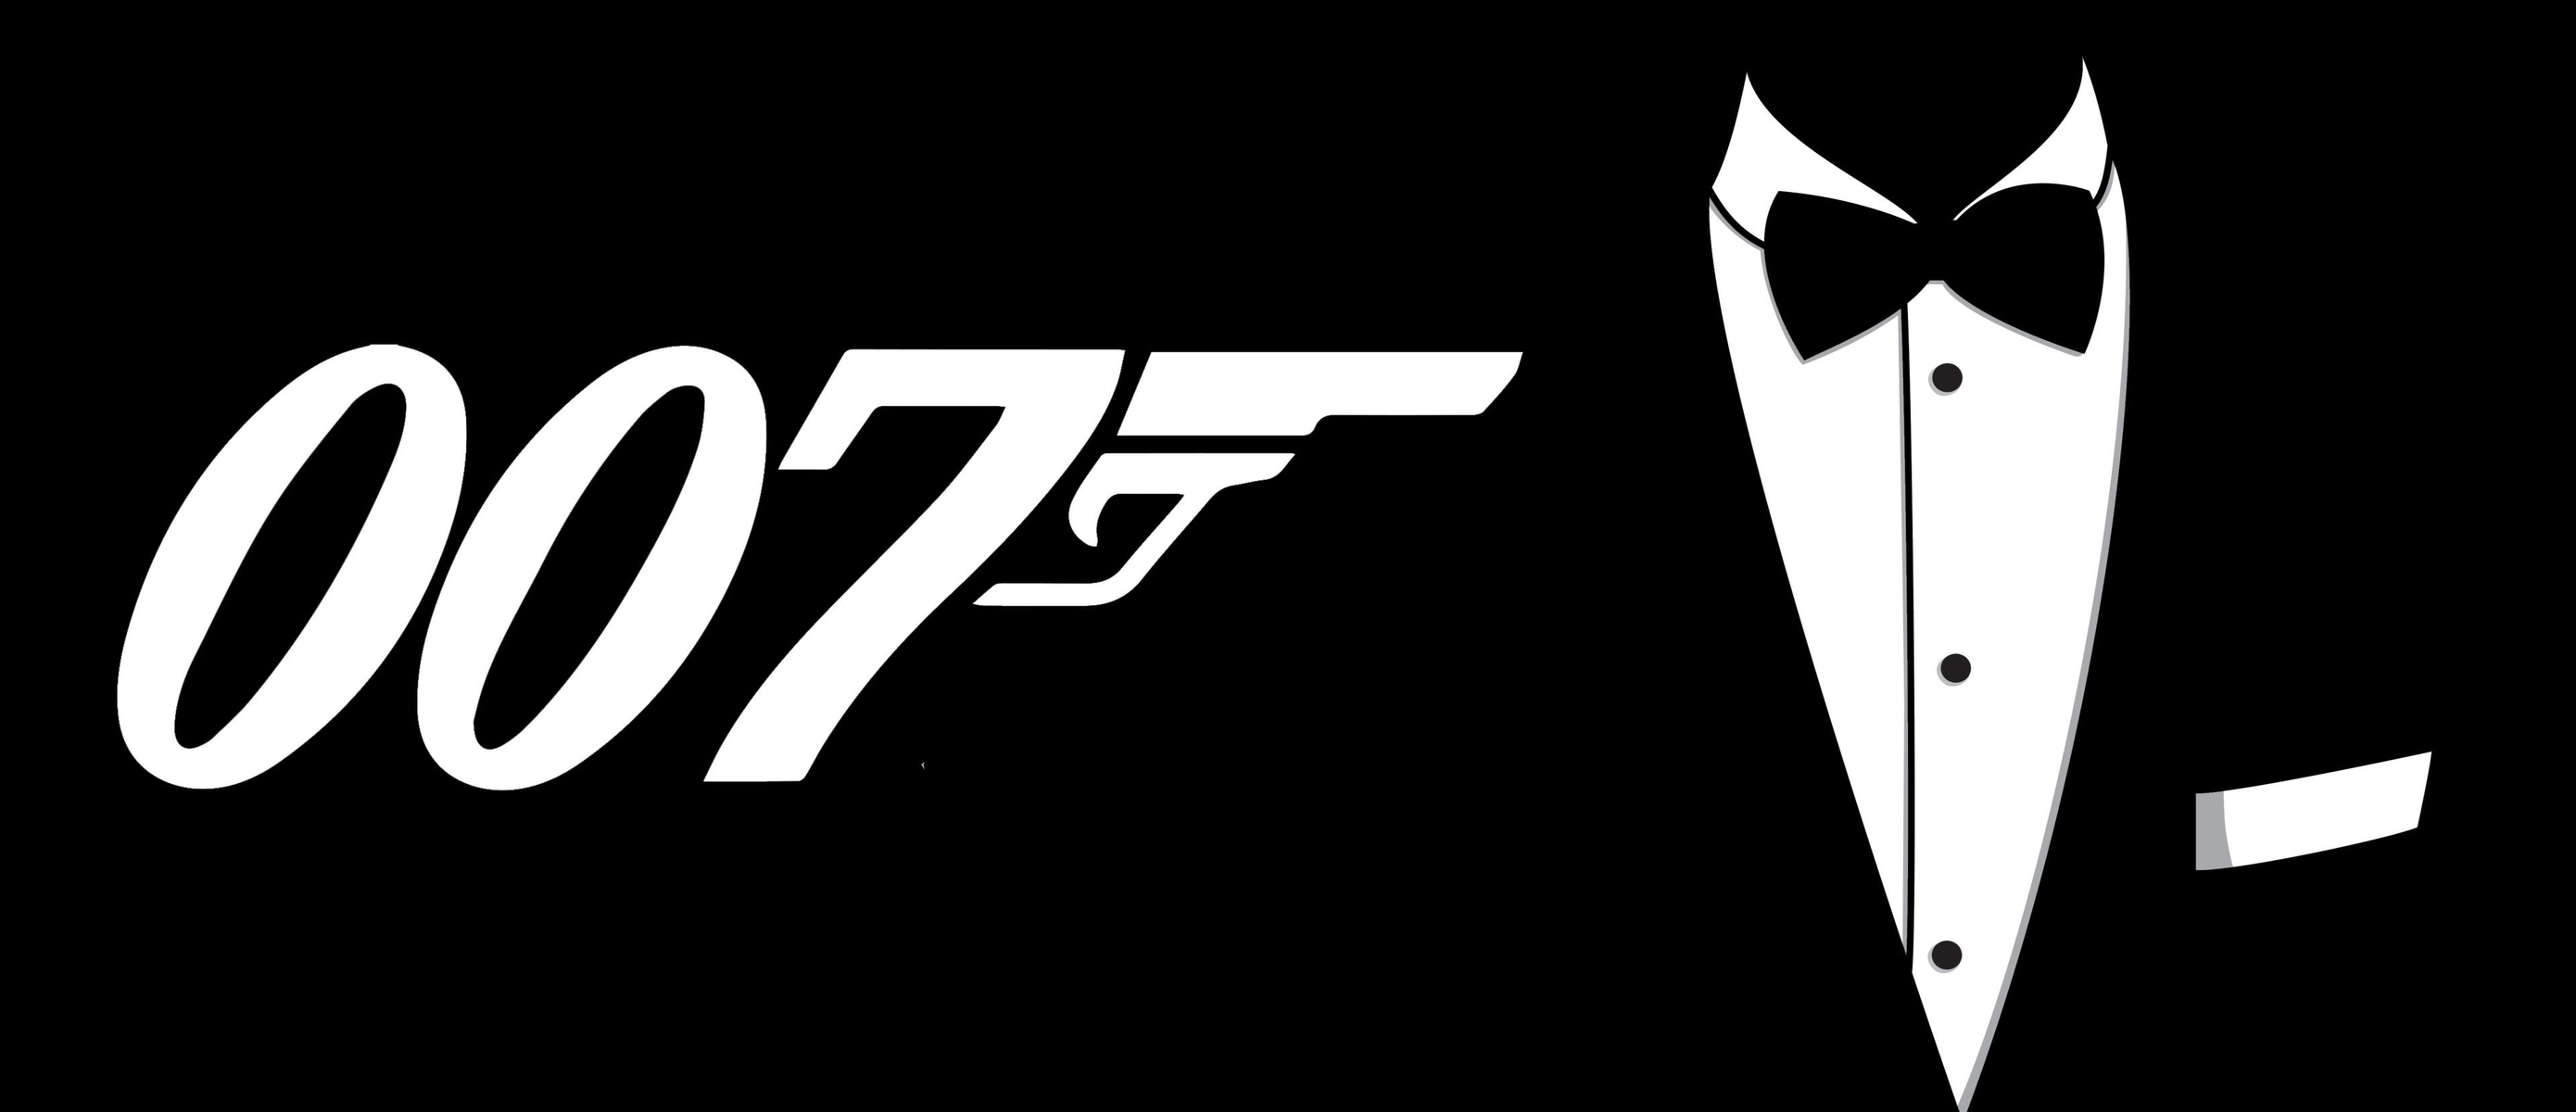 Проект 007: Авторы Hitman работают над игрой во вселенной Джеймса Бонда - а...